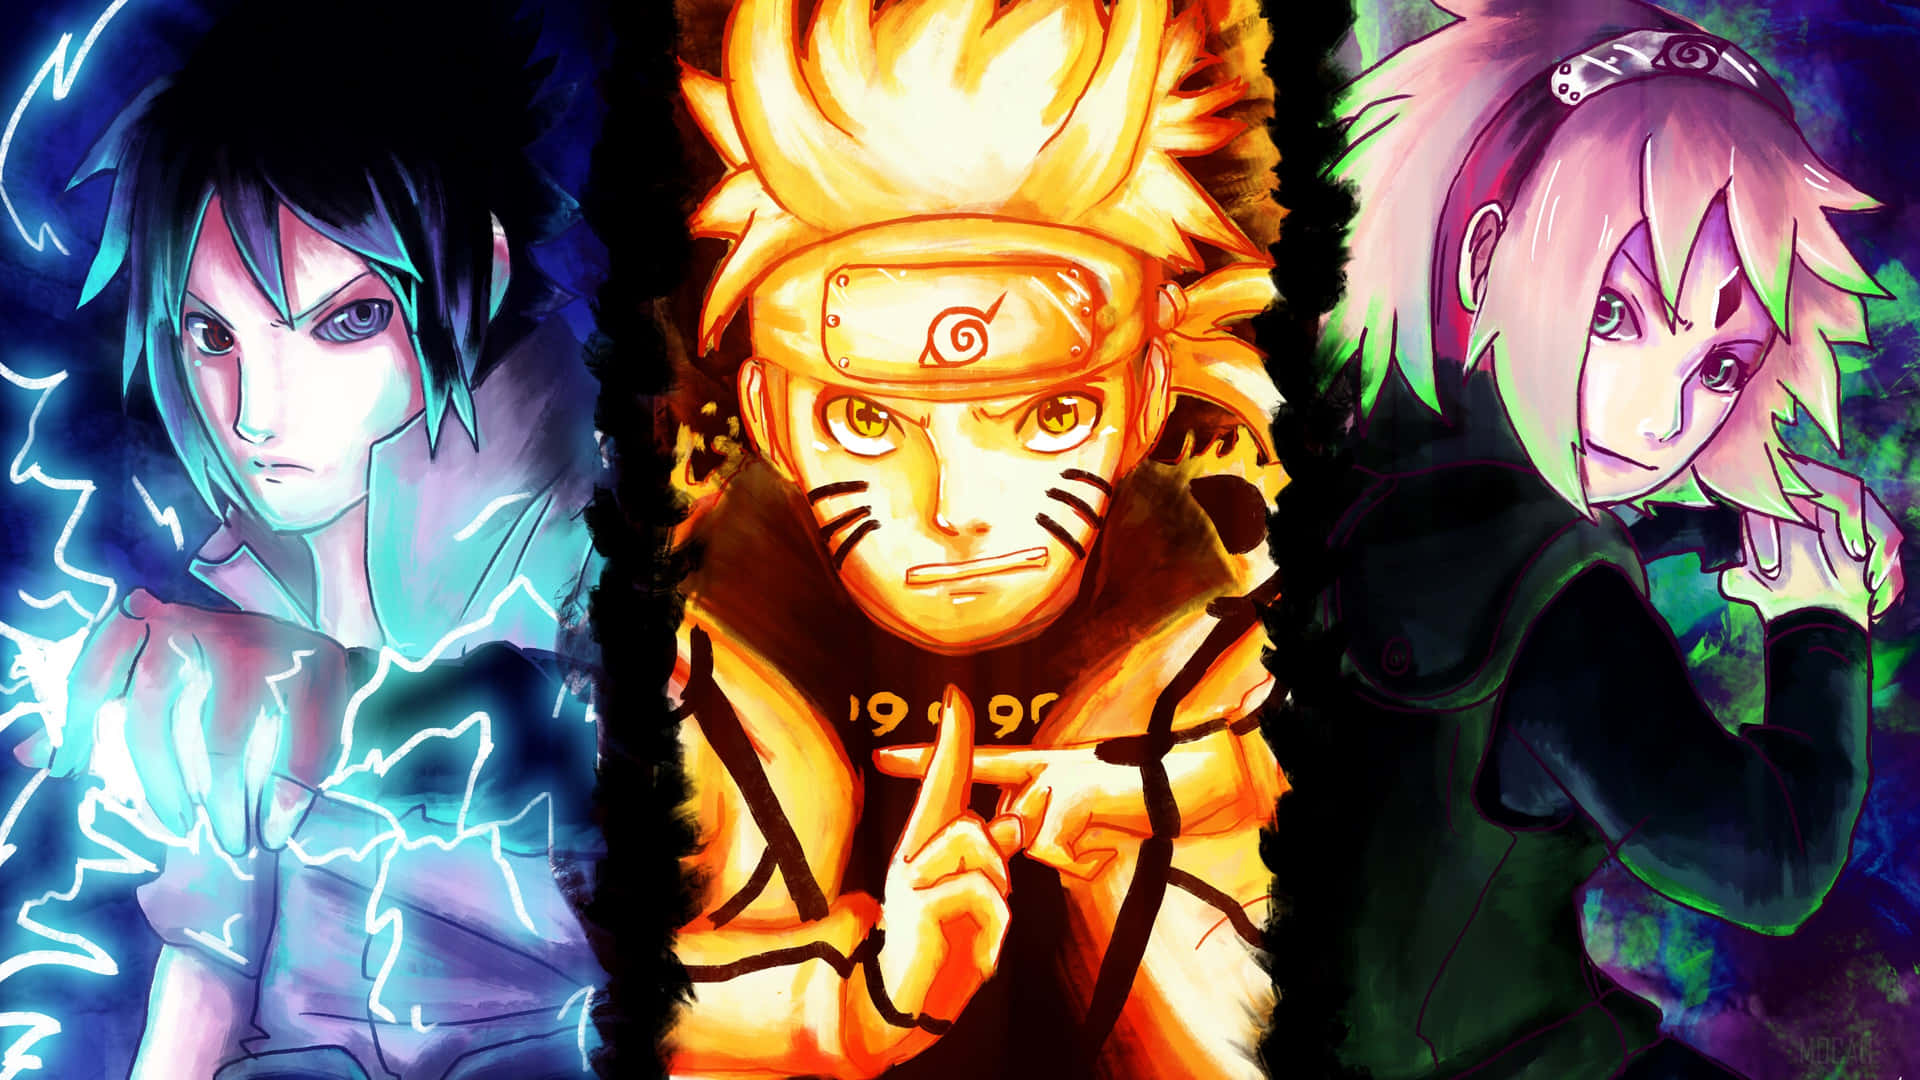 Bạn là một người hâm mộ đích thực của Naruto Uzumaki? Hãy thưởng thức bức ảnh nền Naruto Uzumaki 4k này và thấy sự sắc nét và độ chi tiết mà chiếc điện thoại của bạn có thể hiển thị. Bạn sẽ không thể nhận ra rằng đây chỉ là một bức ảnh thông thường mà thôi. Hãy cảm nhận sự thật của Naruto Uzumaki!